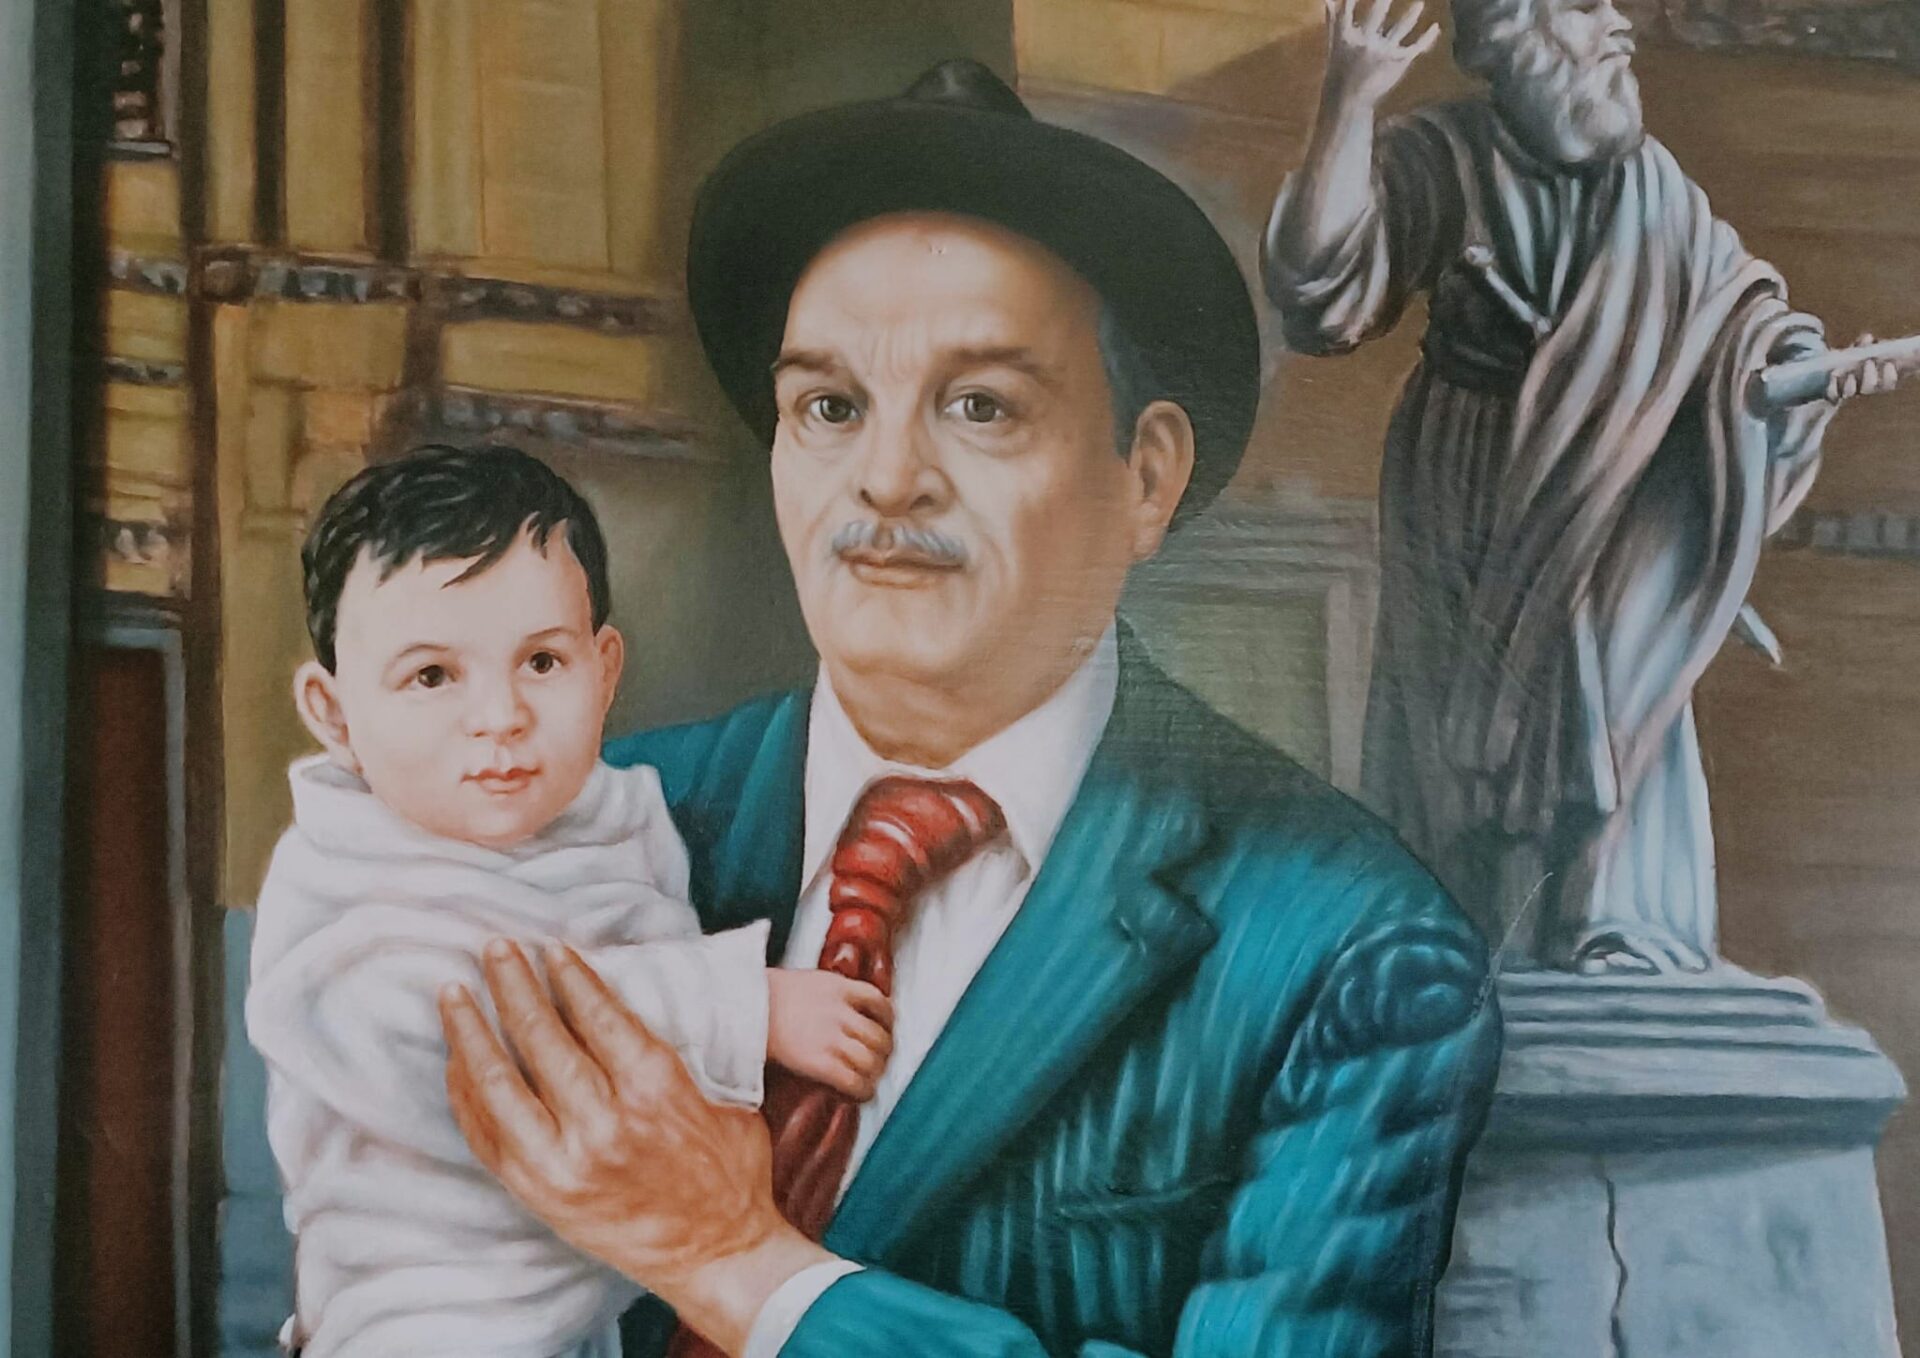 Pasquino Crupi, il ritratto inedito dell’uomo dietro alla figura politica